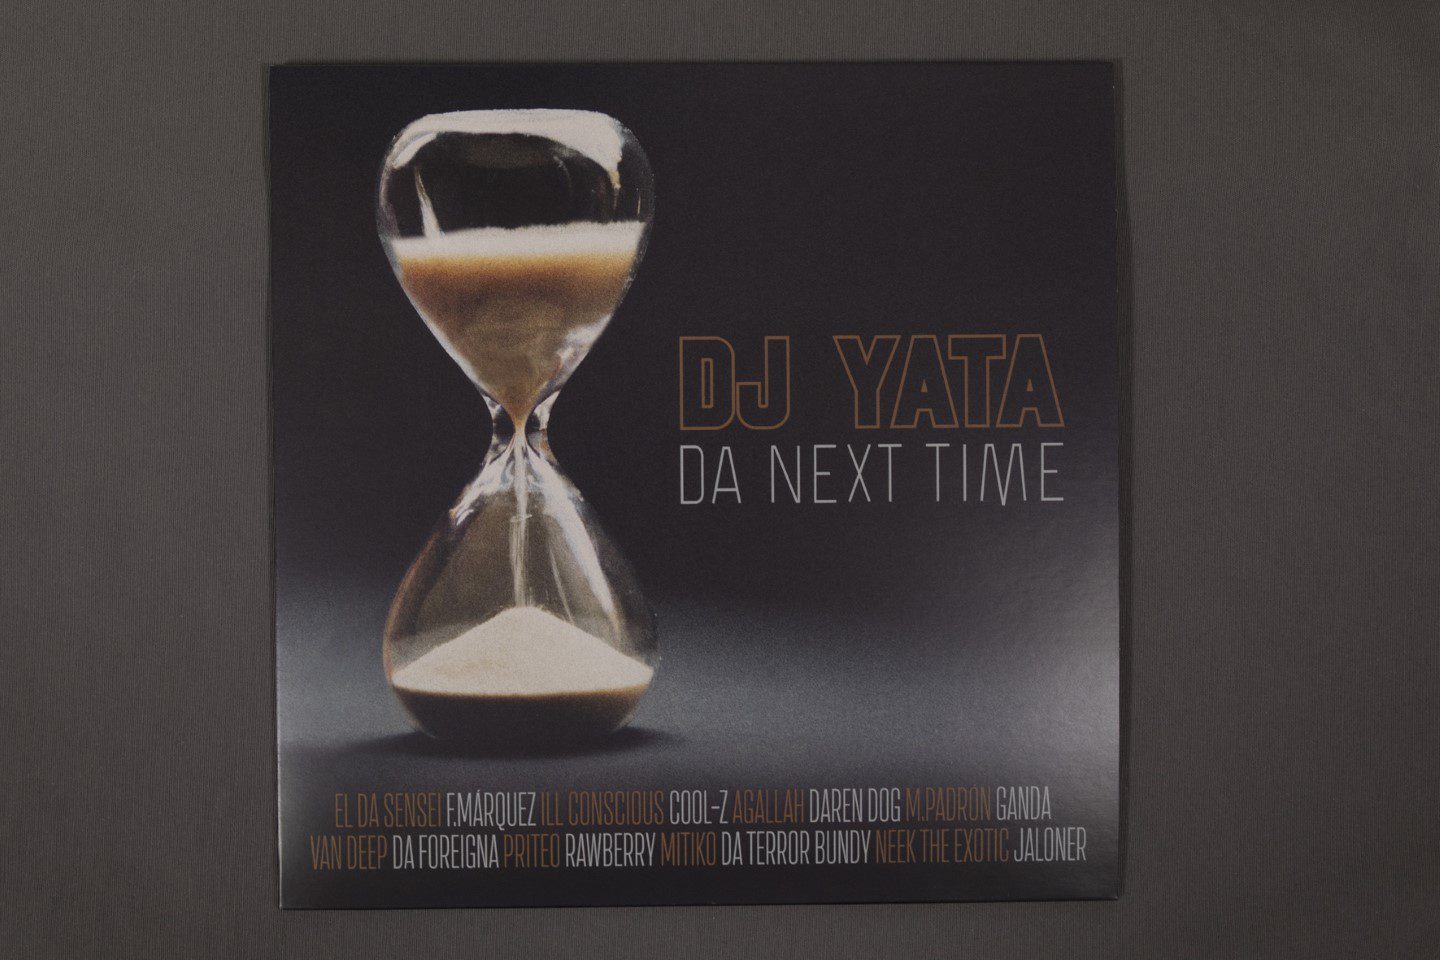 DJ YATA - "DA NEXT TIME" - Vinilo 12”